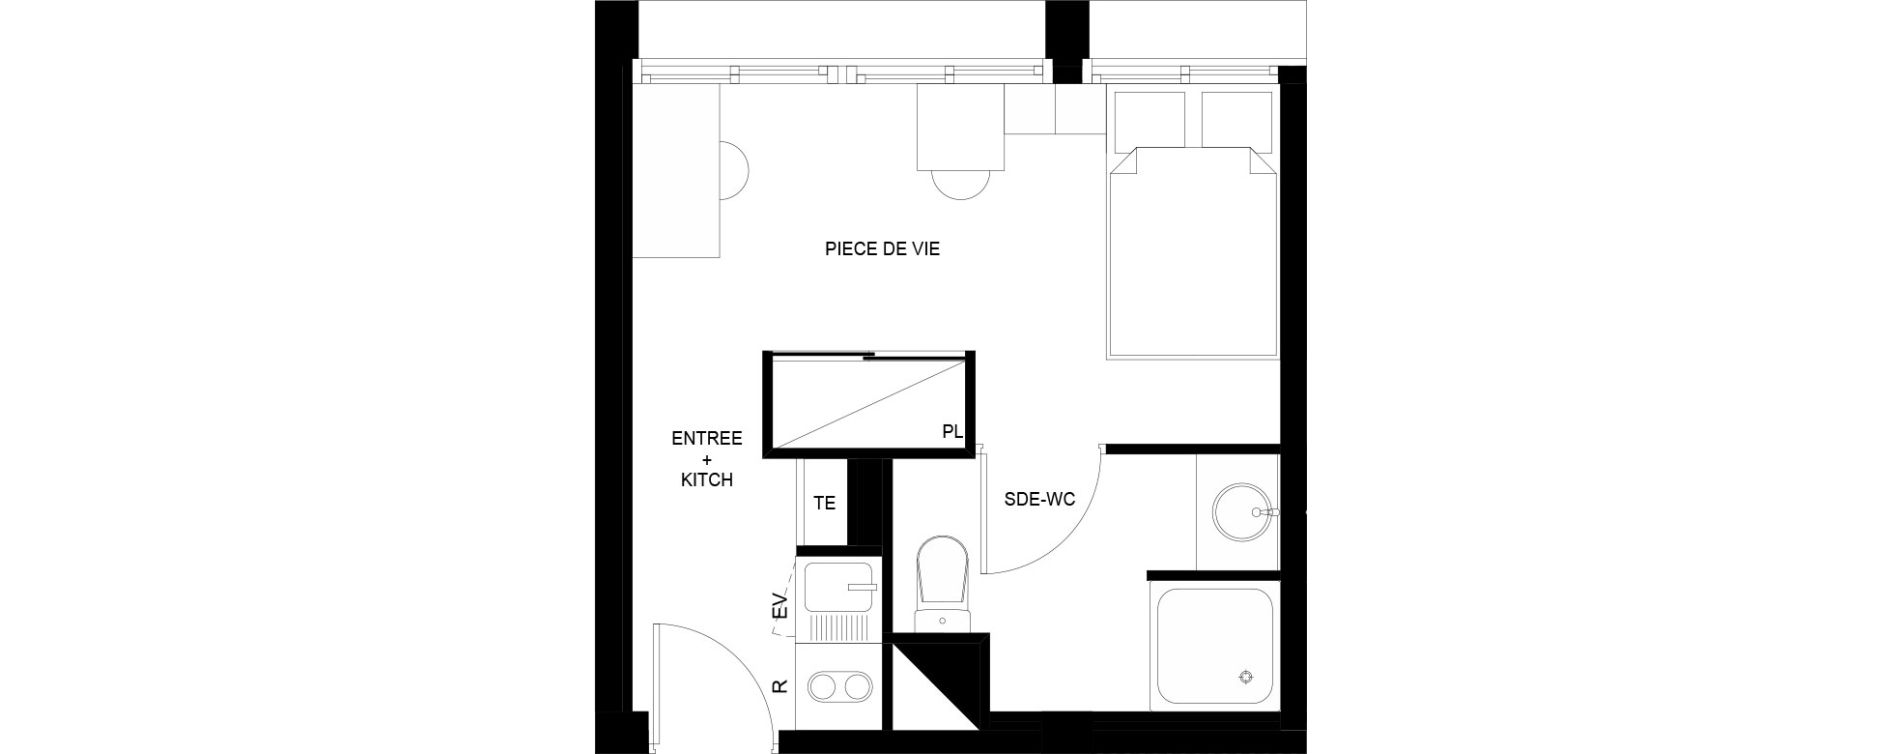 Appartement T1 meubl&eacute; de 18,27 m2 au Mans Nationale